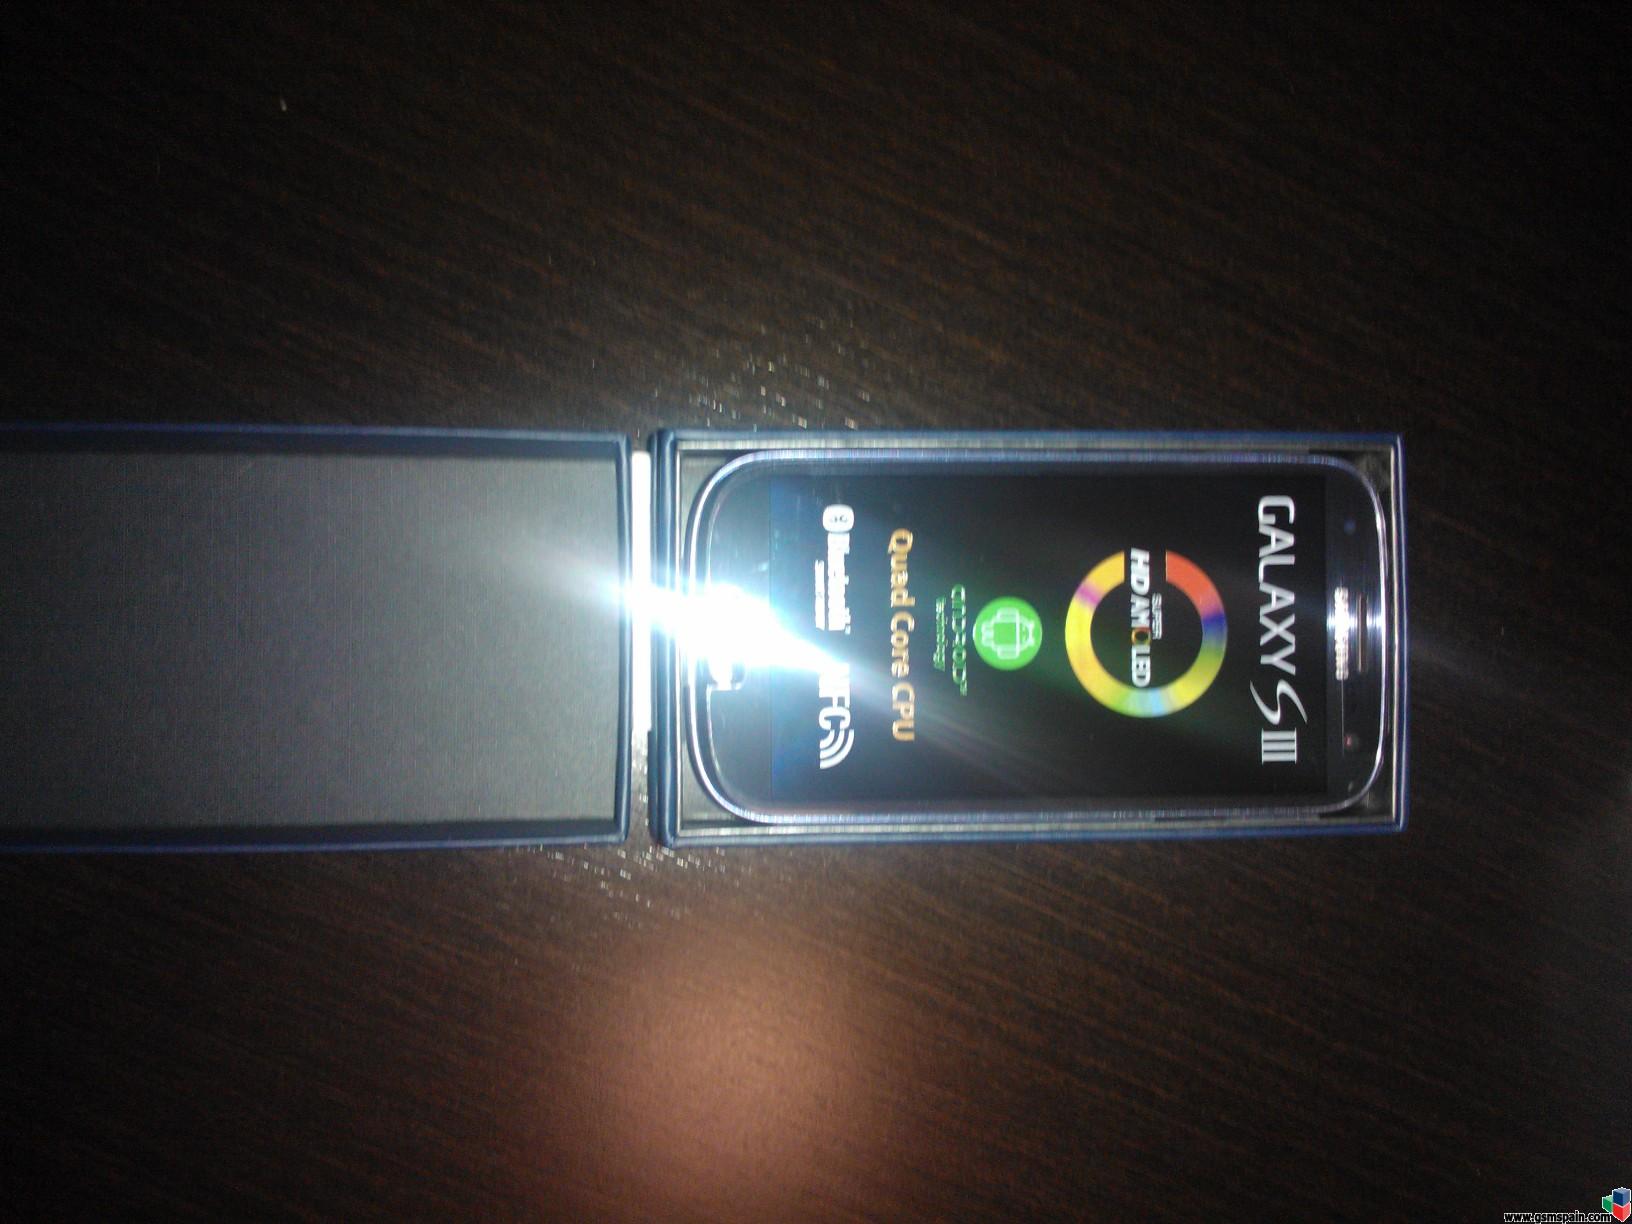 [VENDO] Samsung Galaxy S3 Blue Vodafone + factura (slo cambio por Nuevo Ipad 4G)